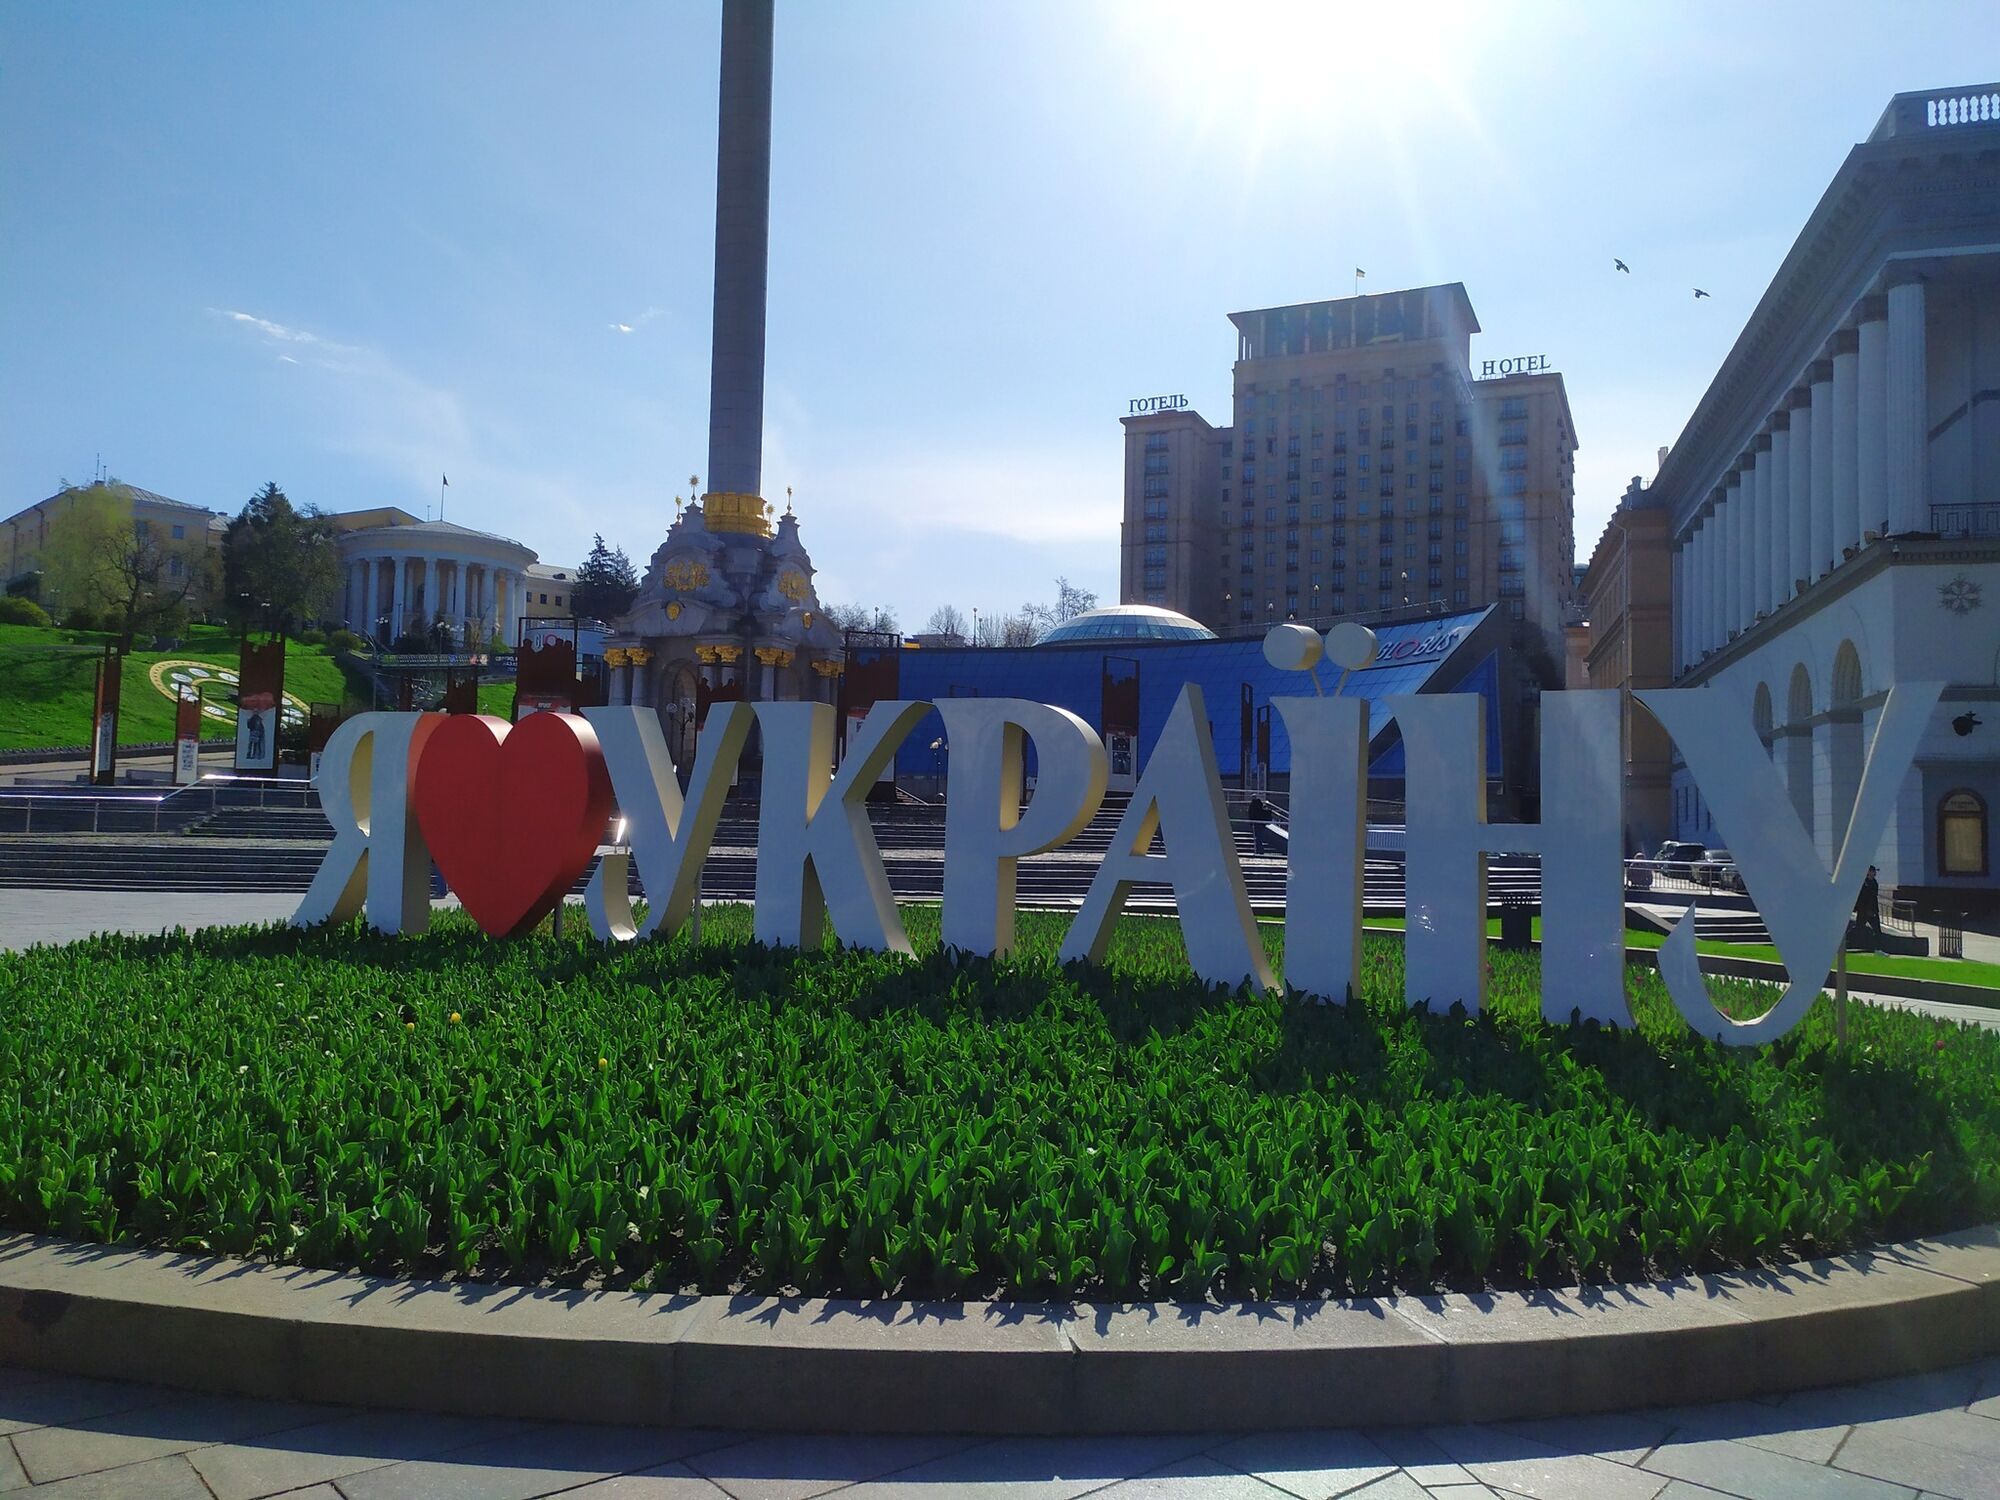 В Киеве начинают цвести 125 тыс. нидерландских тюльпанов: где можно увидеть красоту. Фото